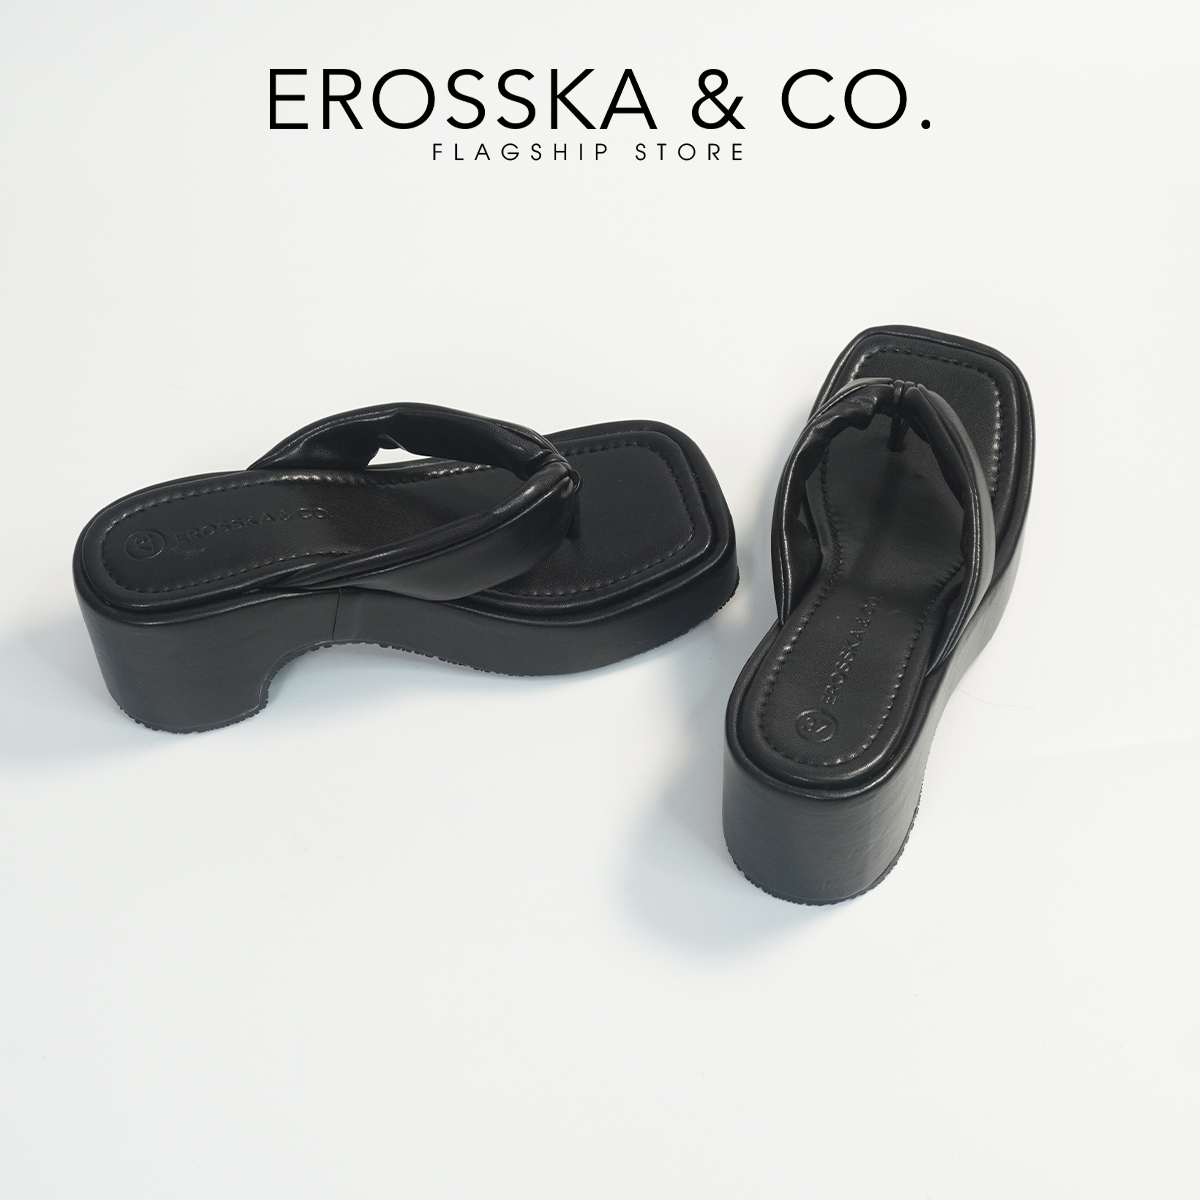 Erosska - Dép nữ thời trang đế xuồng dày xỏ ngón cao 7cm - SB022